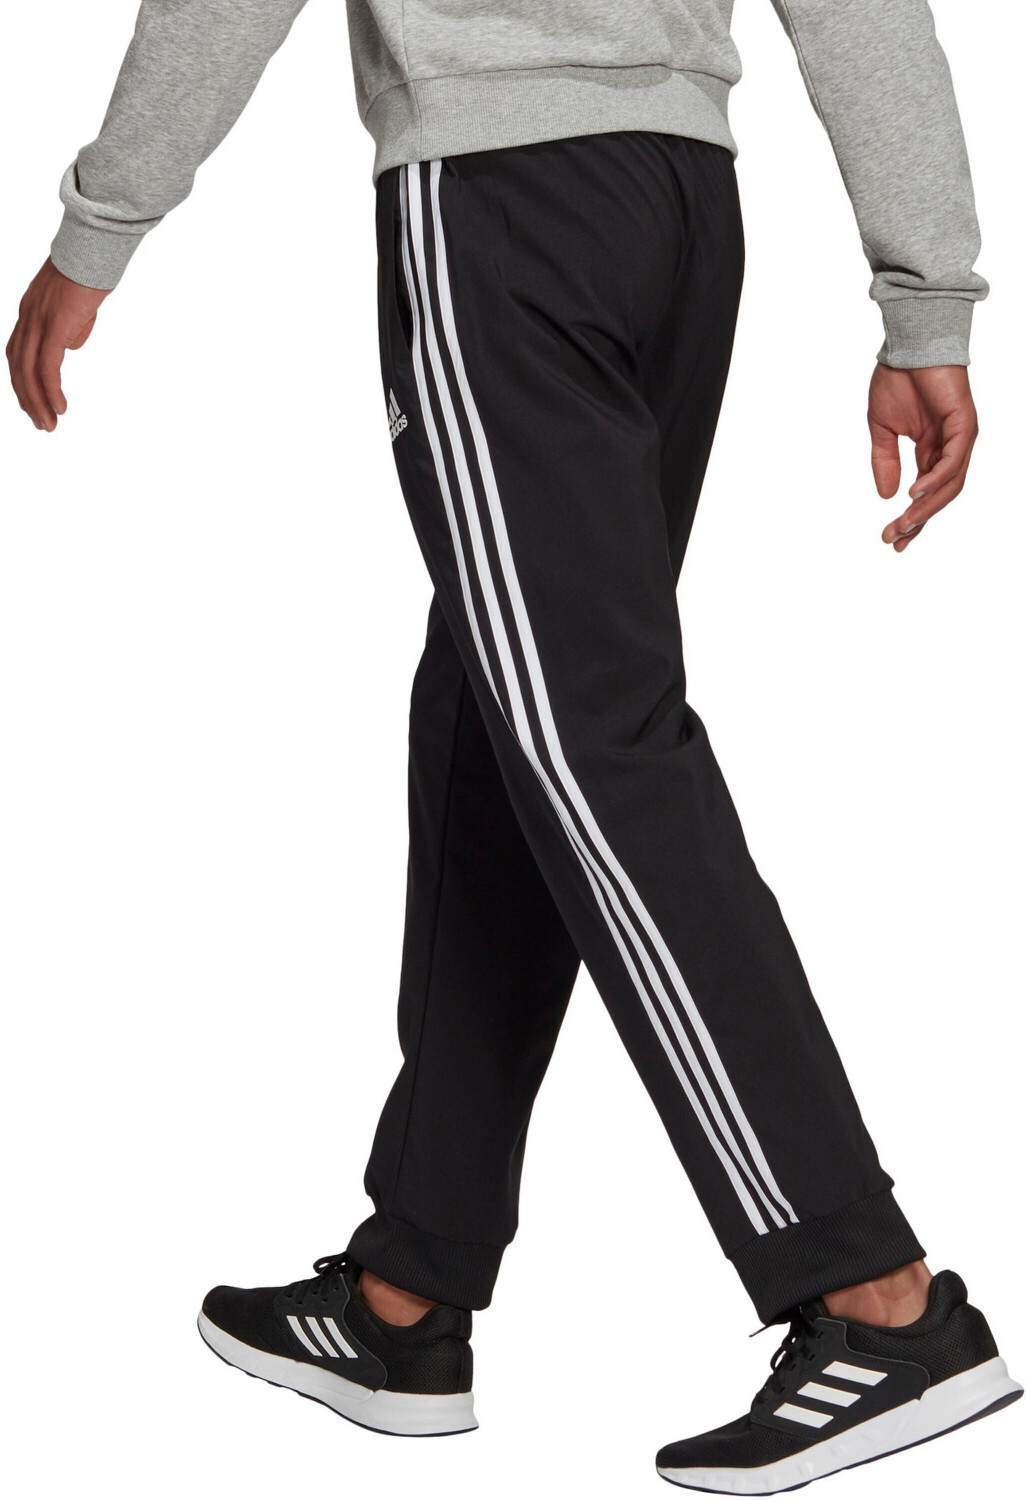 Pantalon jogging fitness homme coton majoritaire coupe droite - 3 Stripes  noir ADIDAS